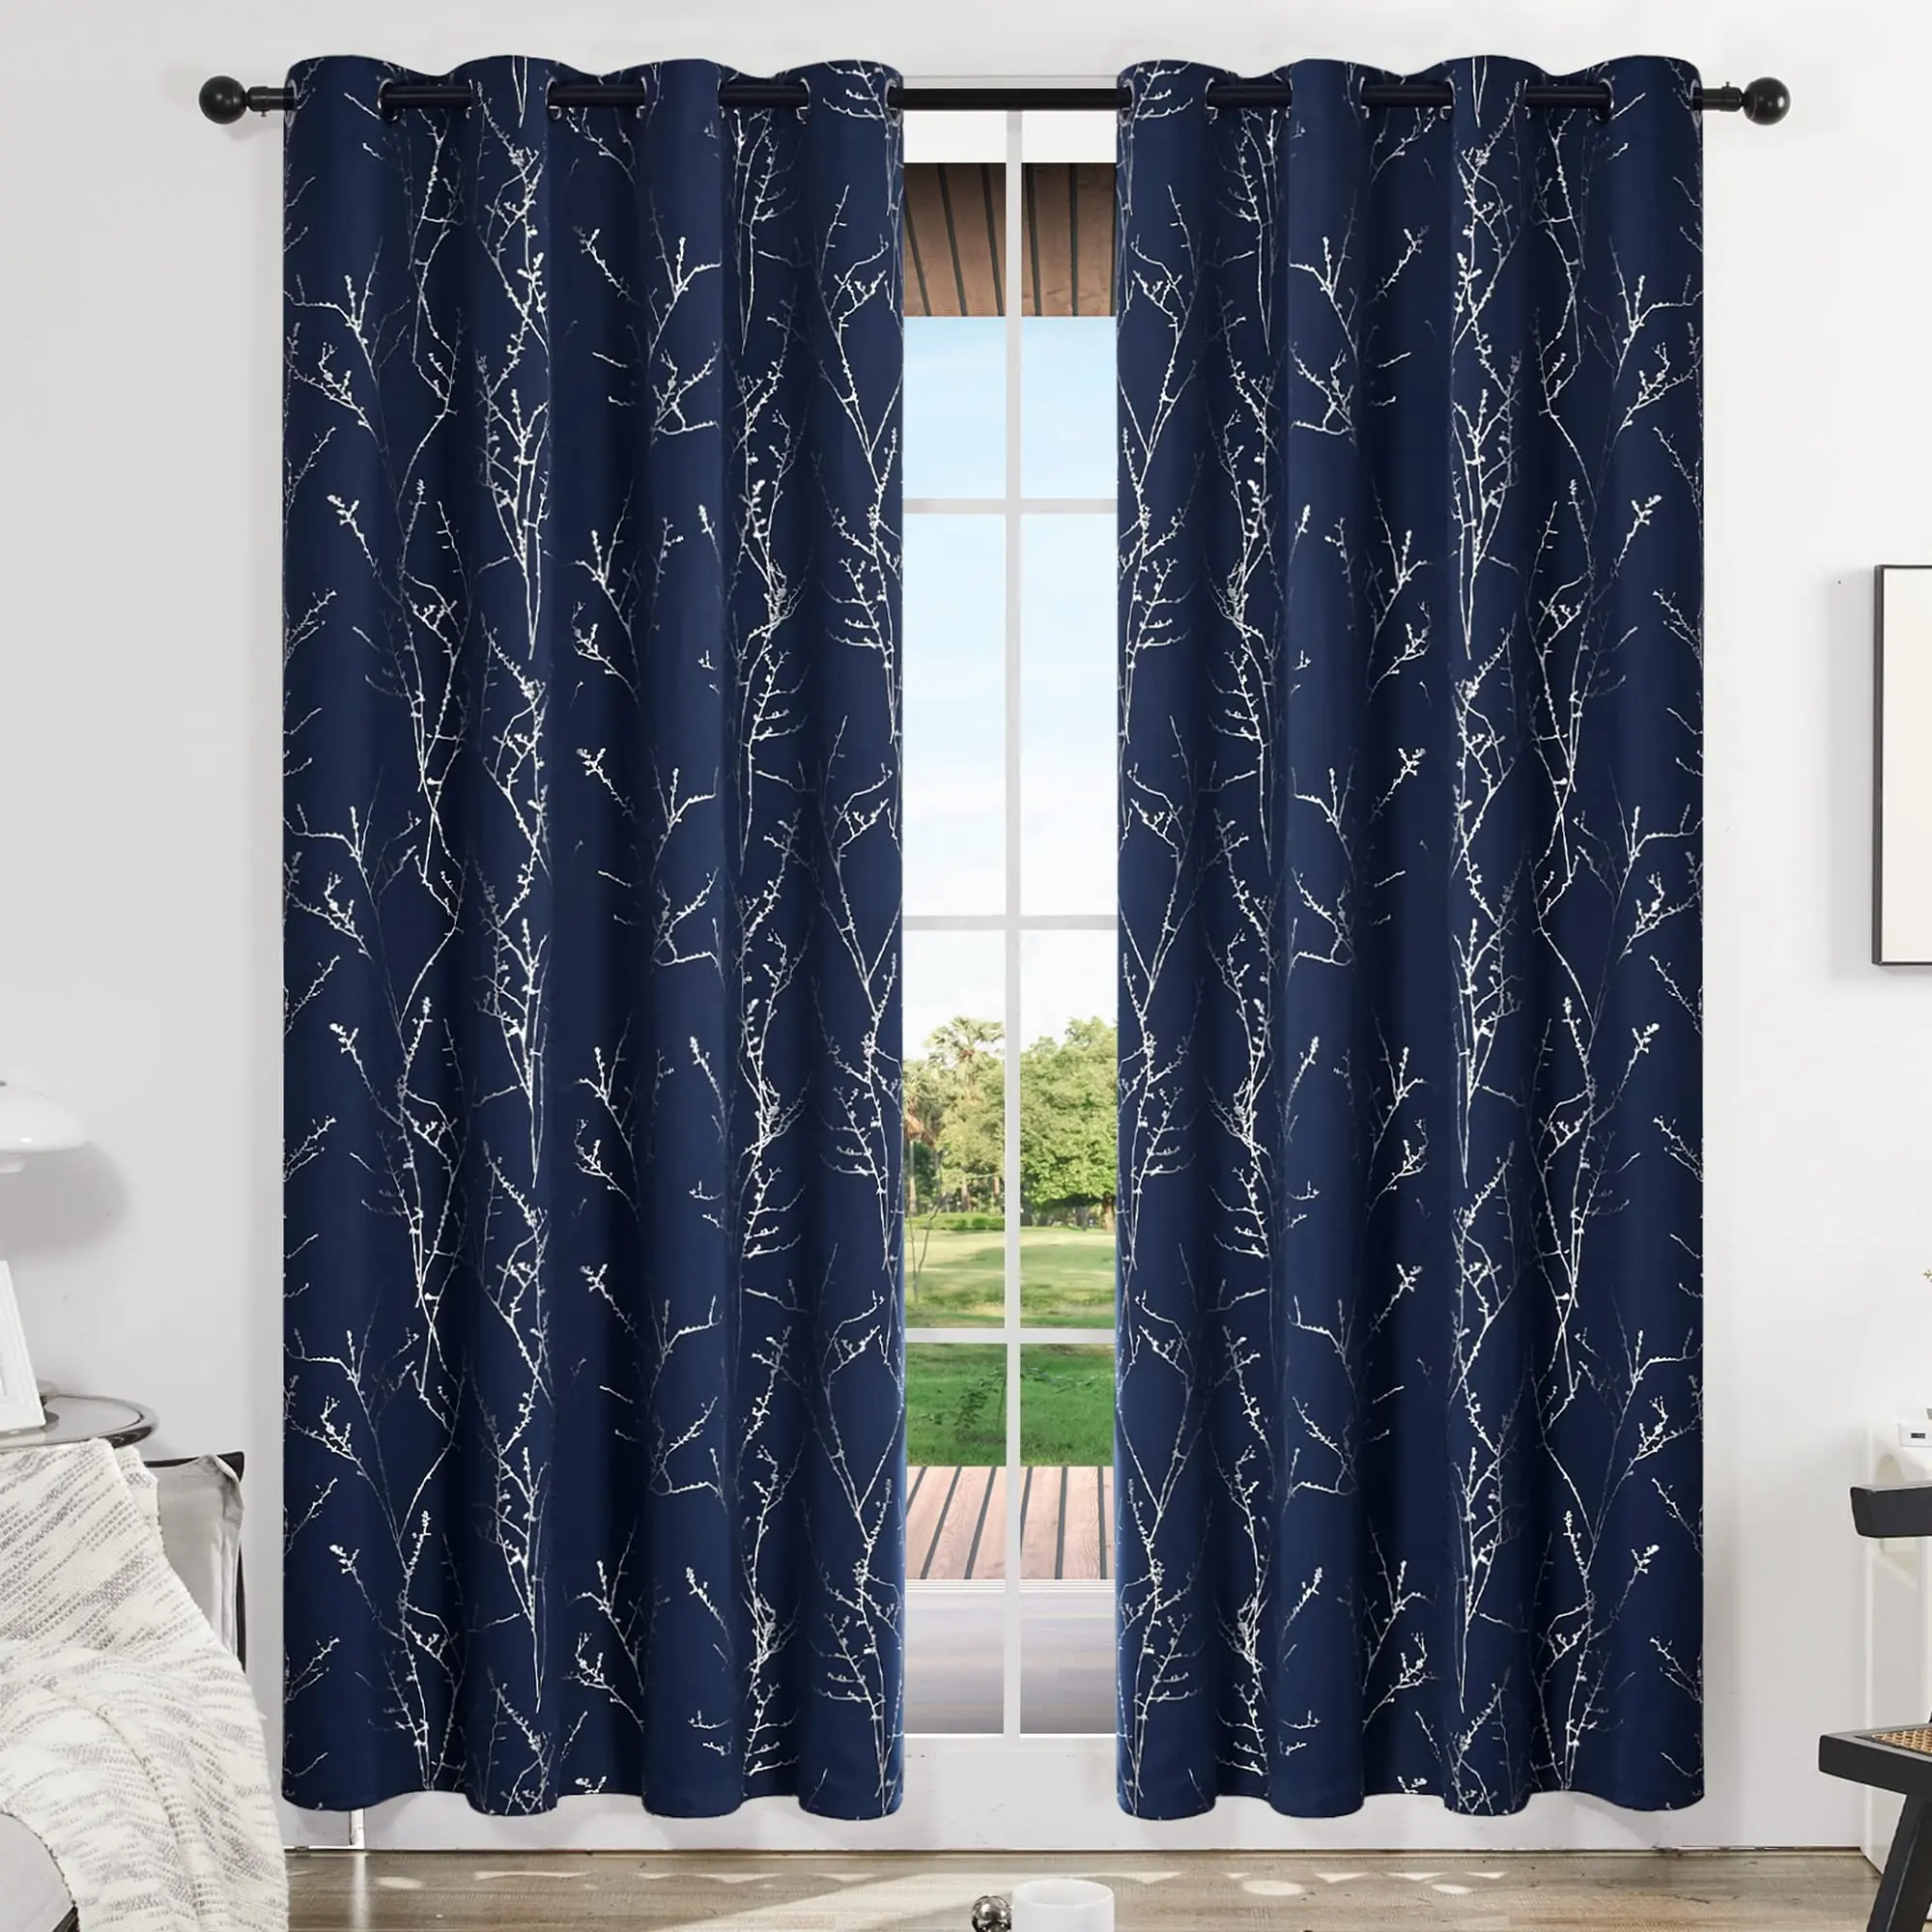 Décor à la maison bleu marine argent branche d'arbre imprimé rideau occultant tissu salon chambre Polyester fenêtre rideaux